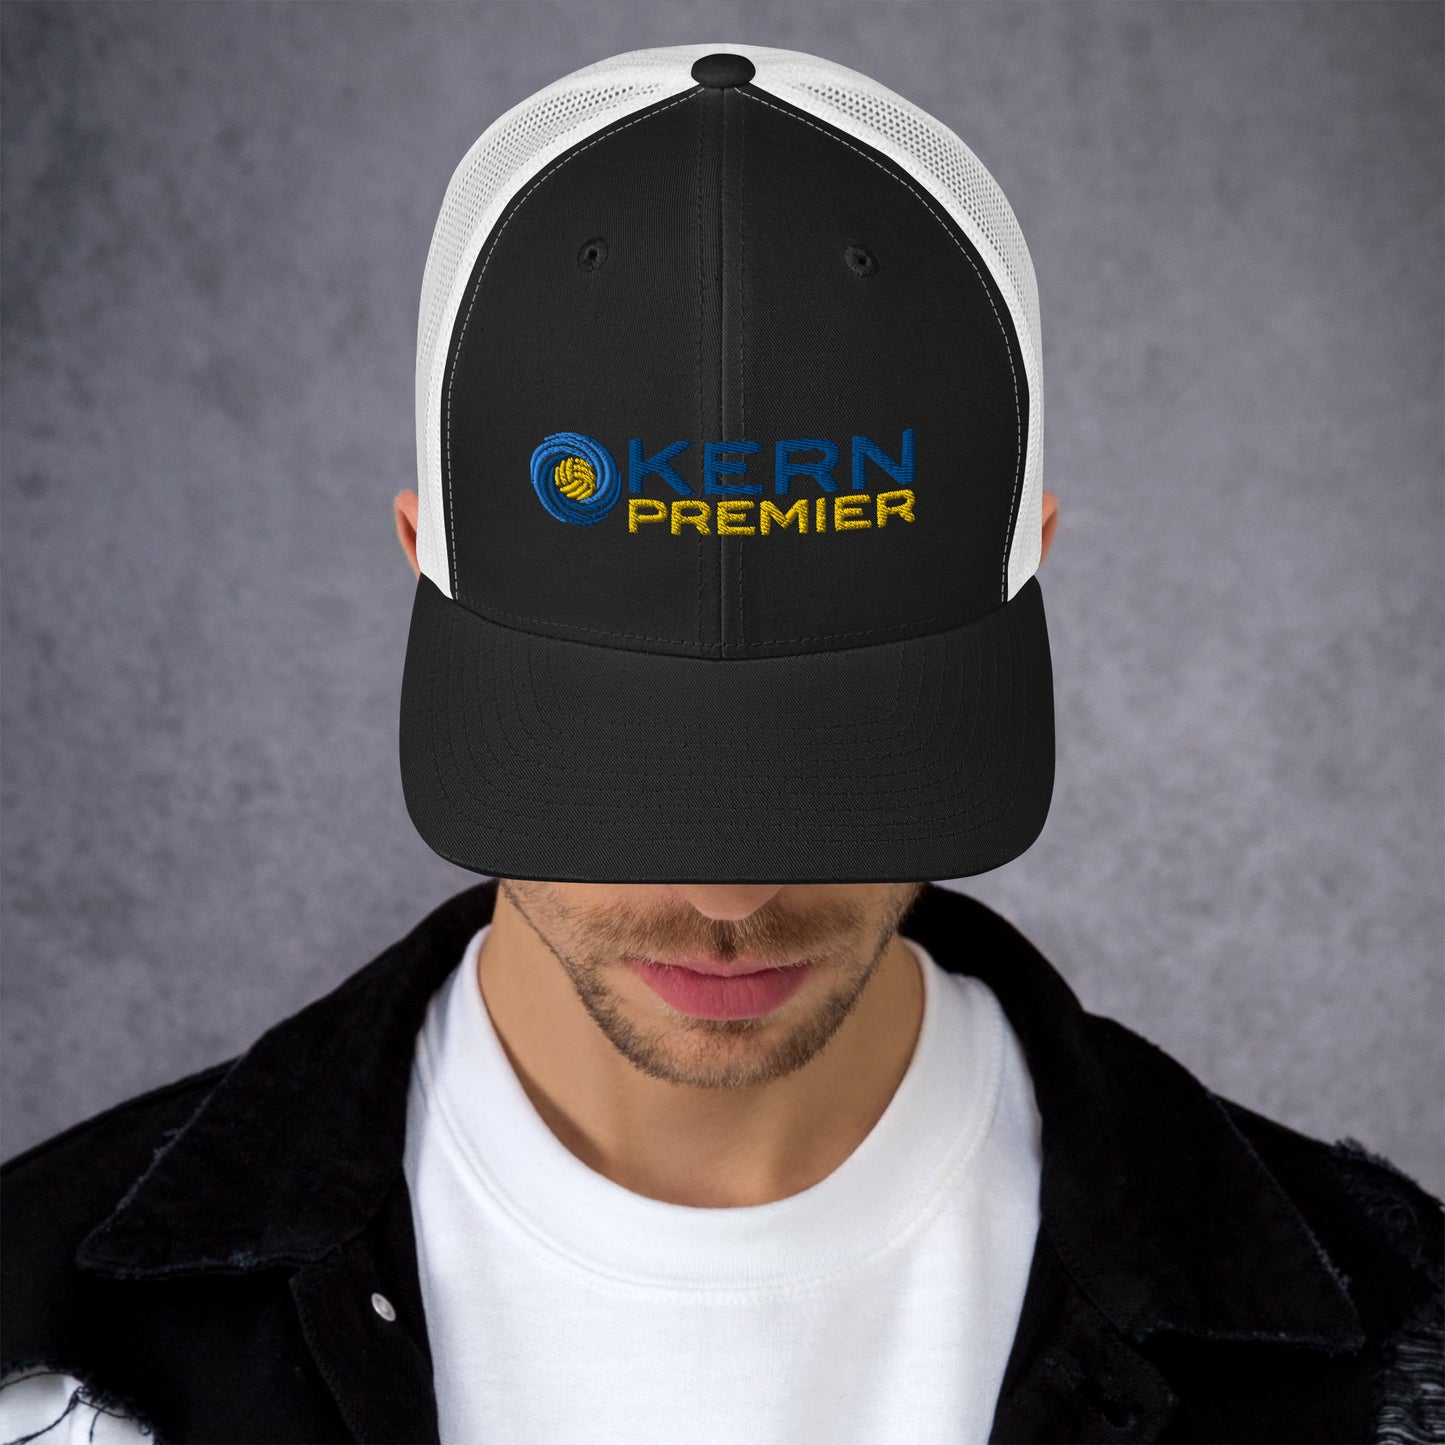 Kern Premier - Branded Retro Trucker Hat | Yupoong 6606